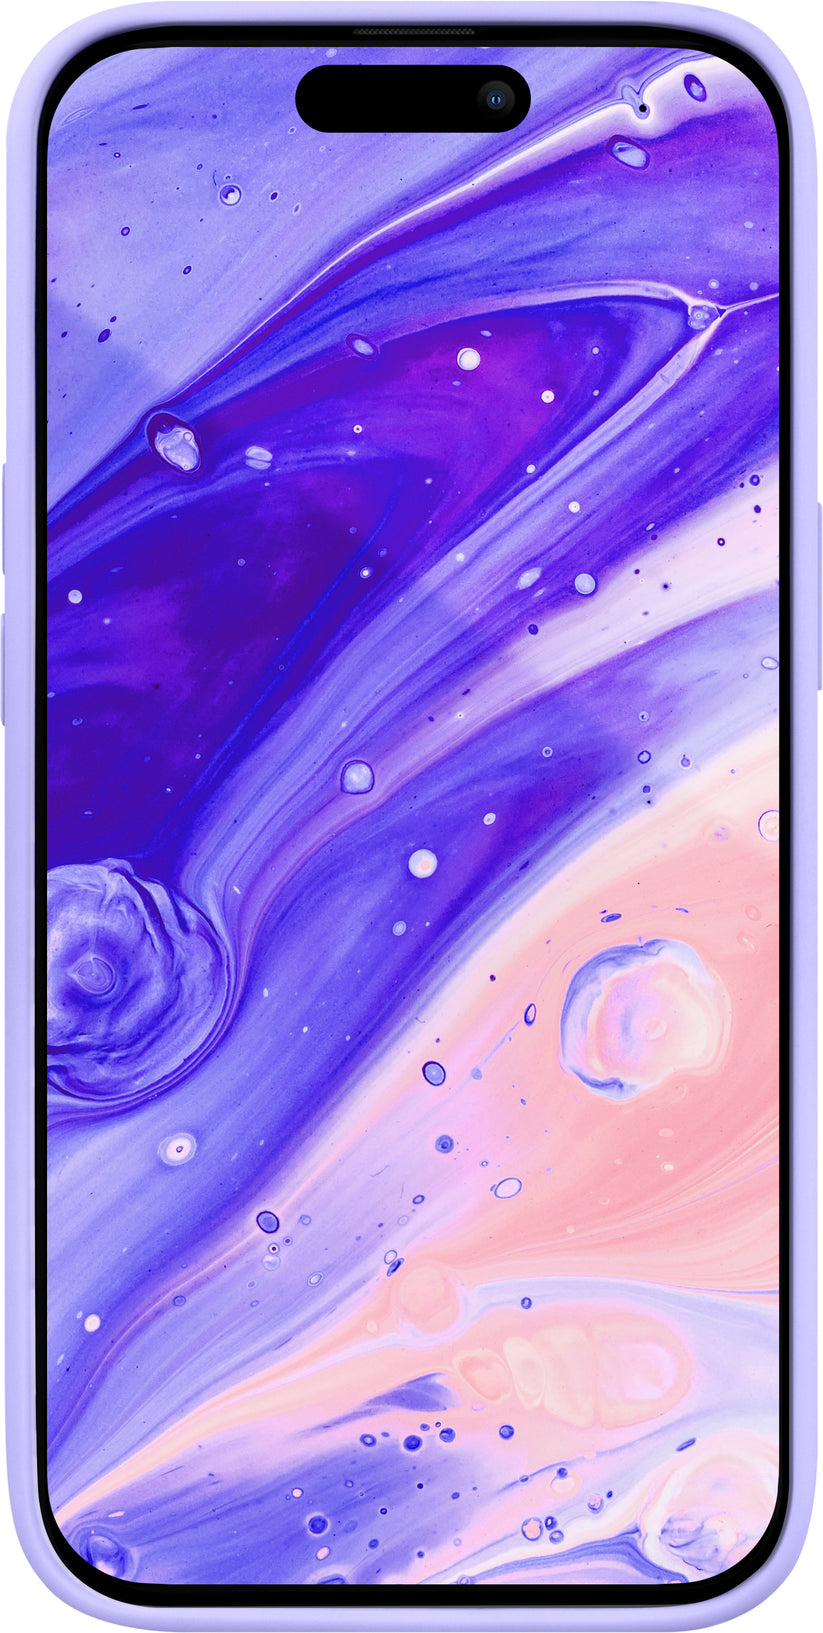 Funda para iPhone 14 Huex Pastels de Laut iPhone 14 Plus Violeta - Rossellimac